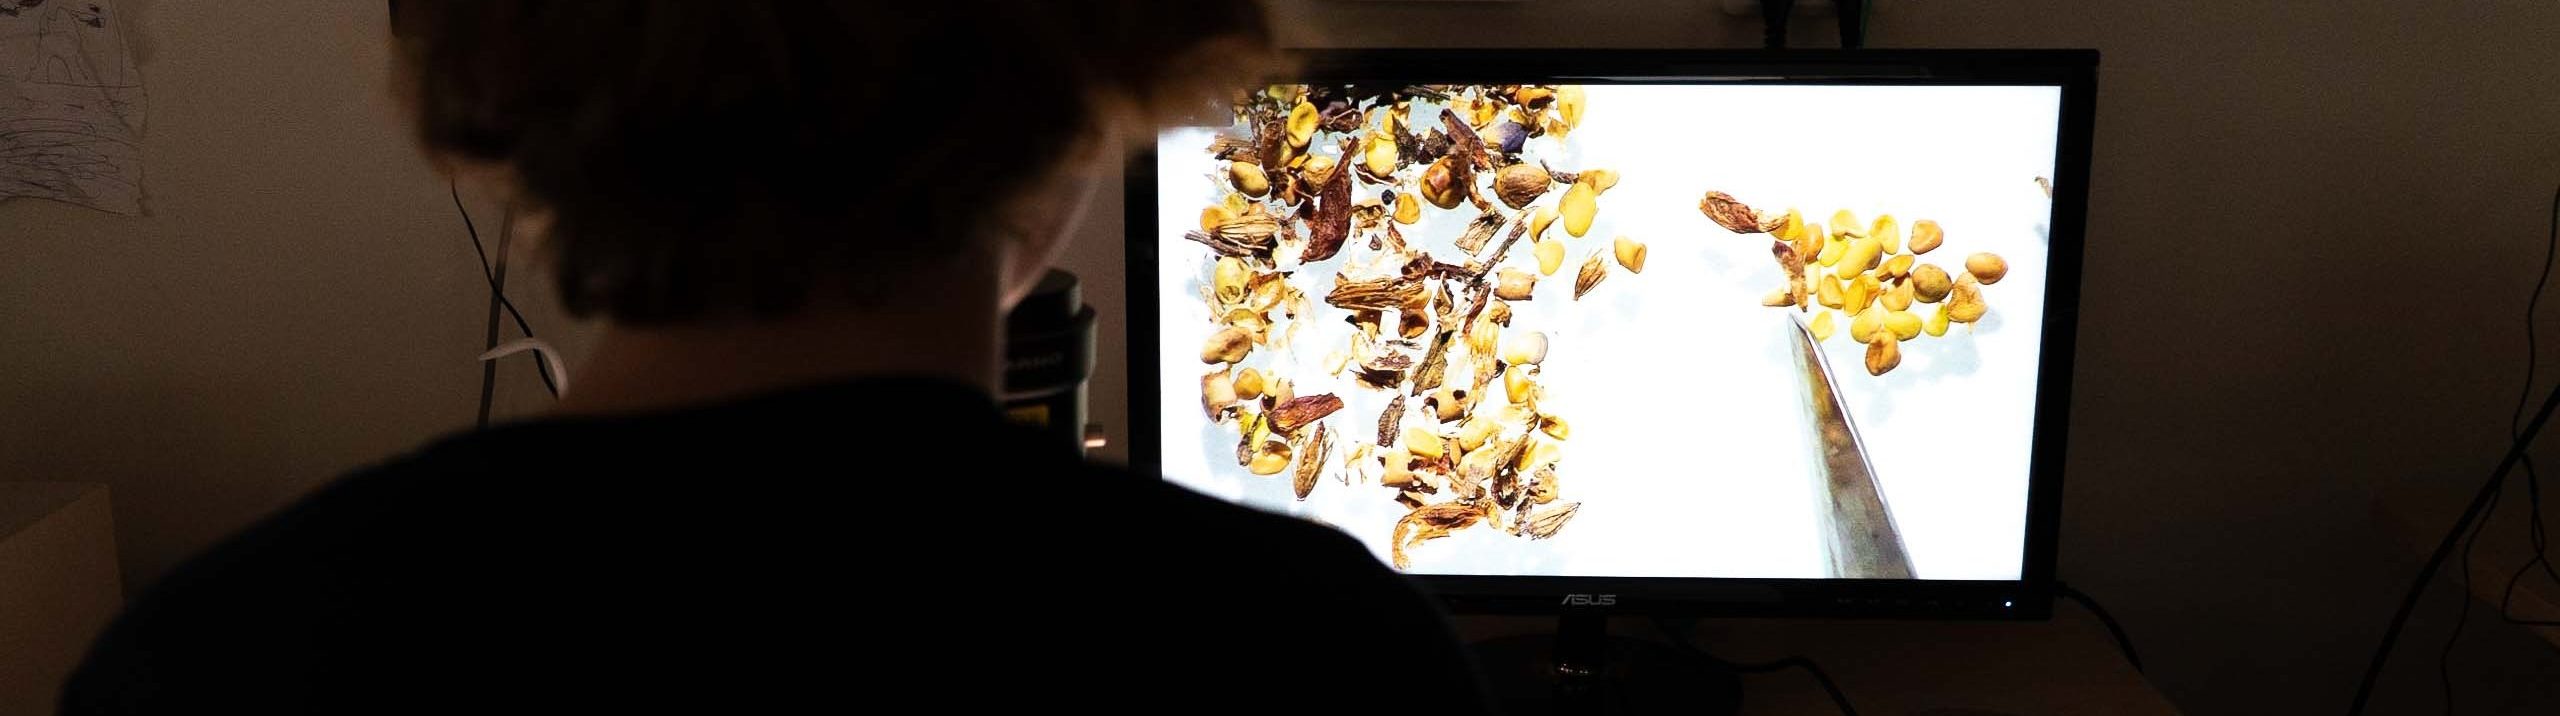 Kvinna med NordGen-tröja sitter framför en skärm med bild på uppförstorade fröer